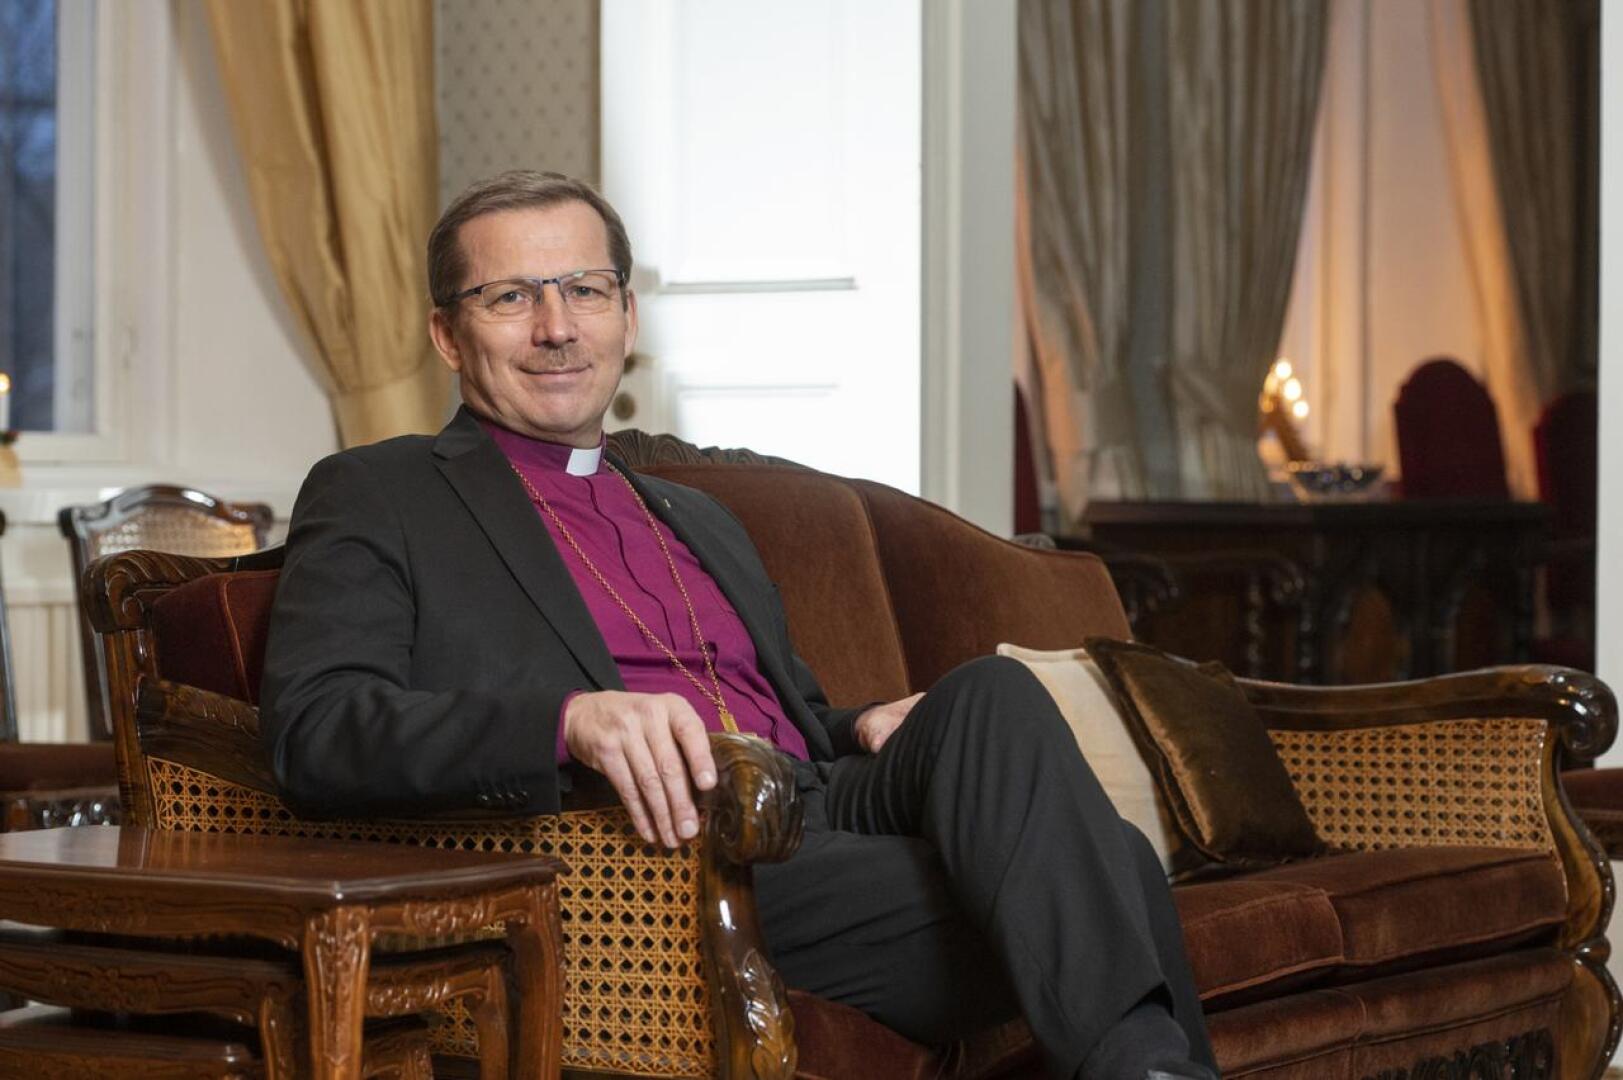 Piispa Jukka Keskitalo arvostaa herätysliikkeitä, mutta "jäsenkorttia" hänellä ei ole.